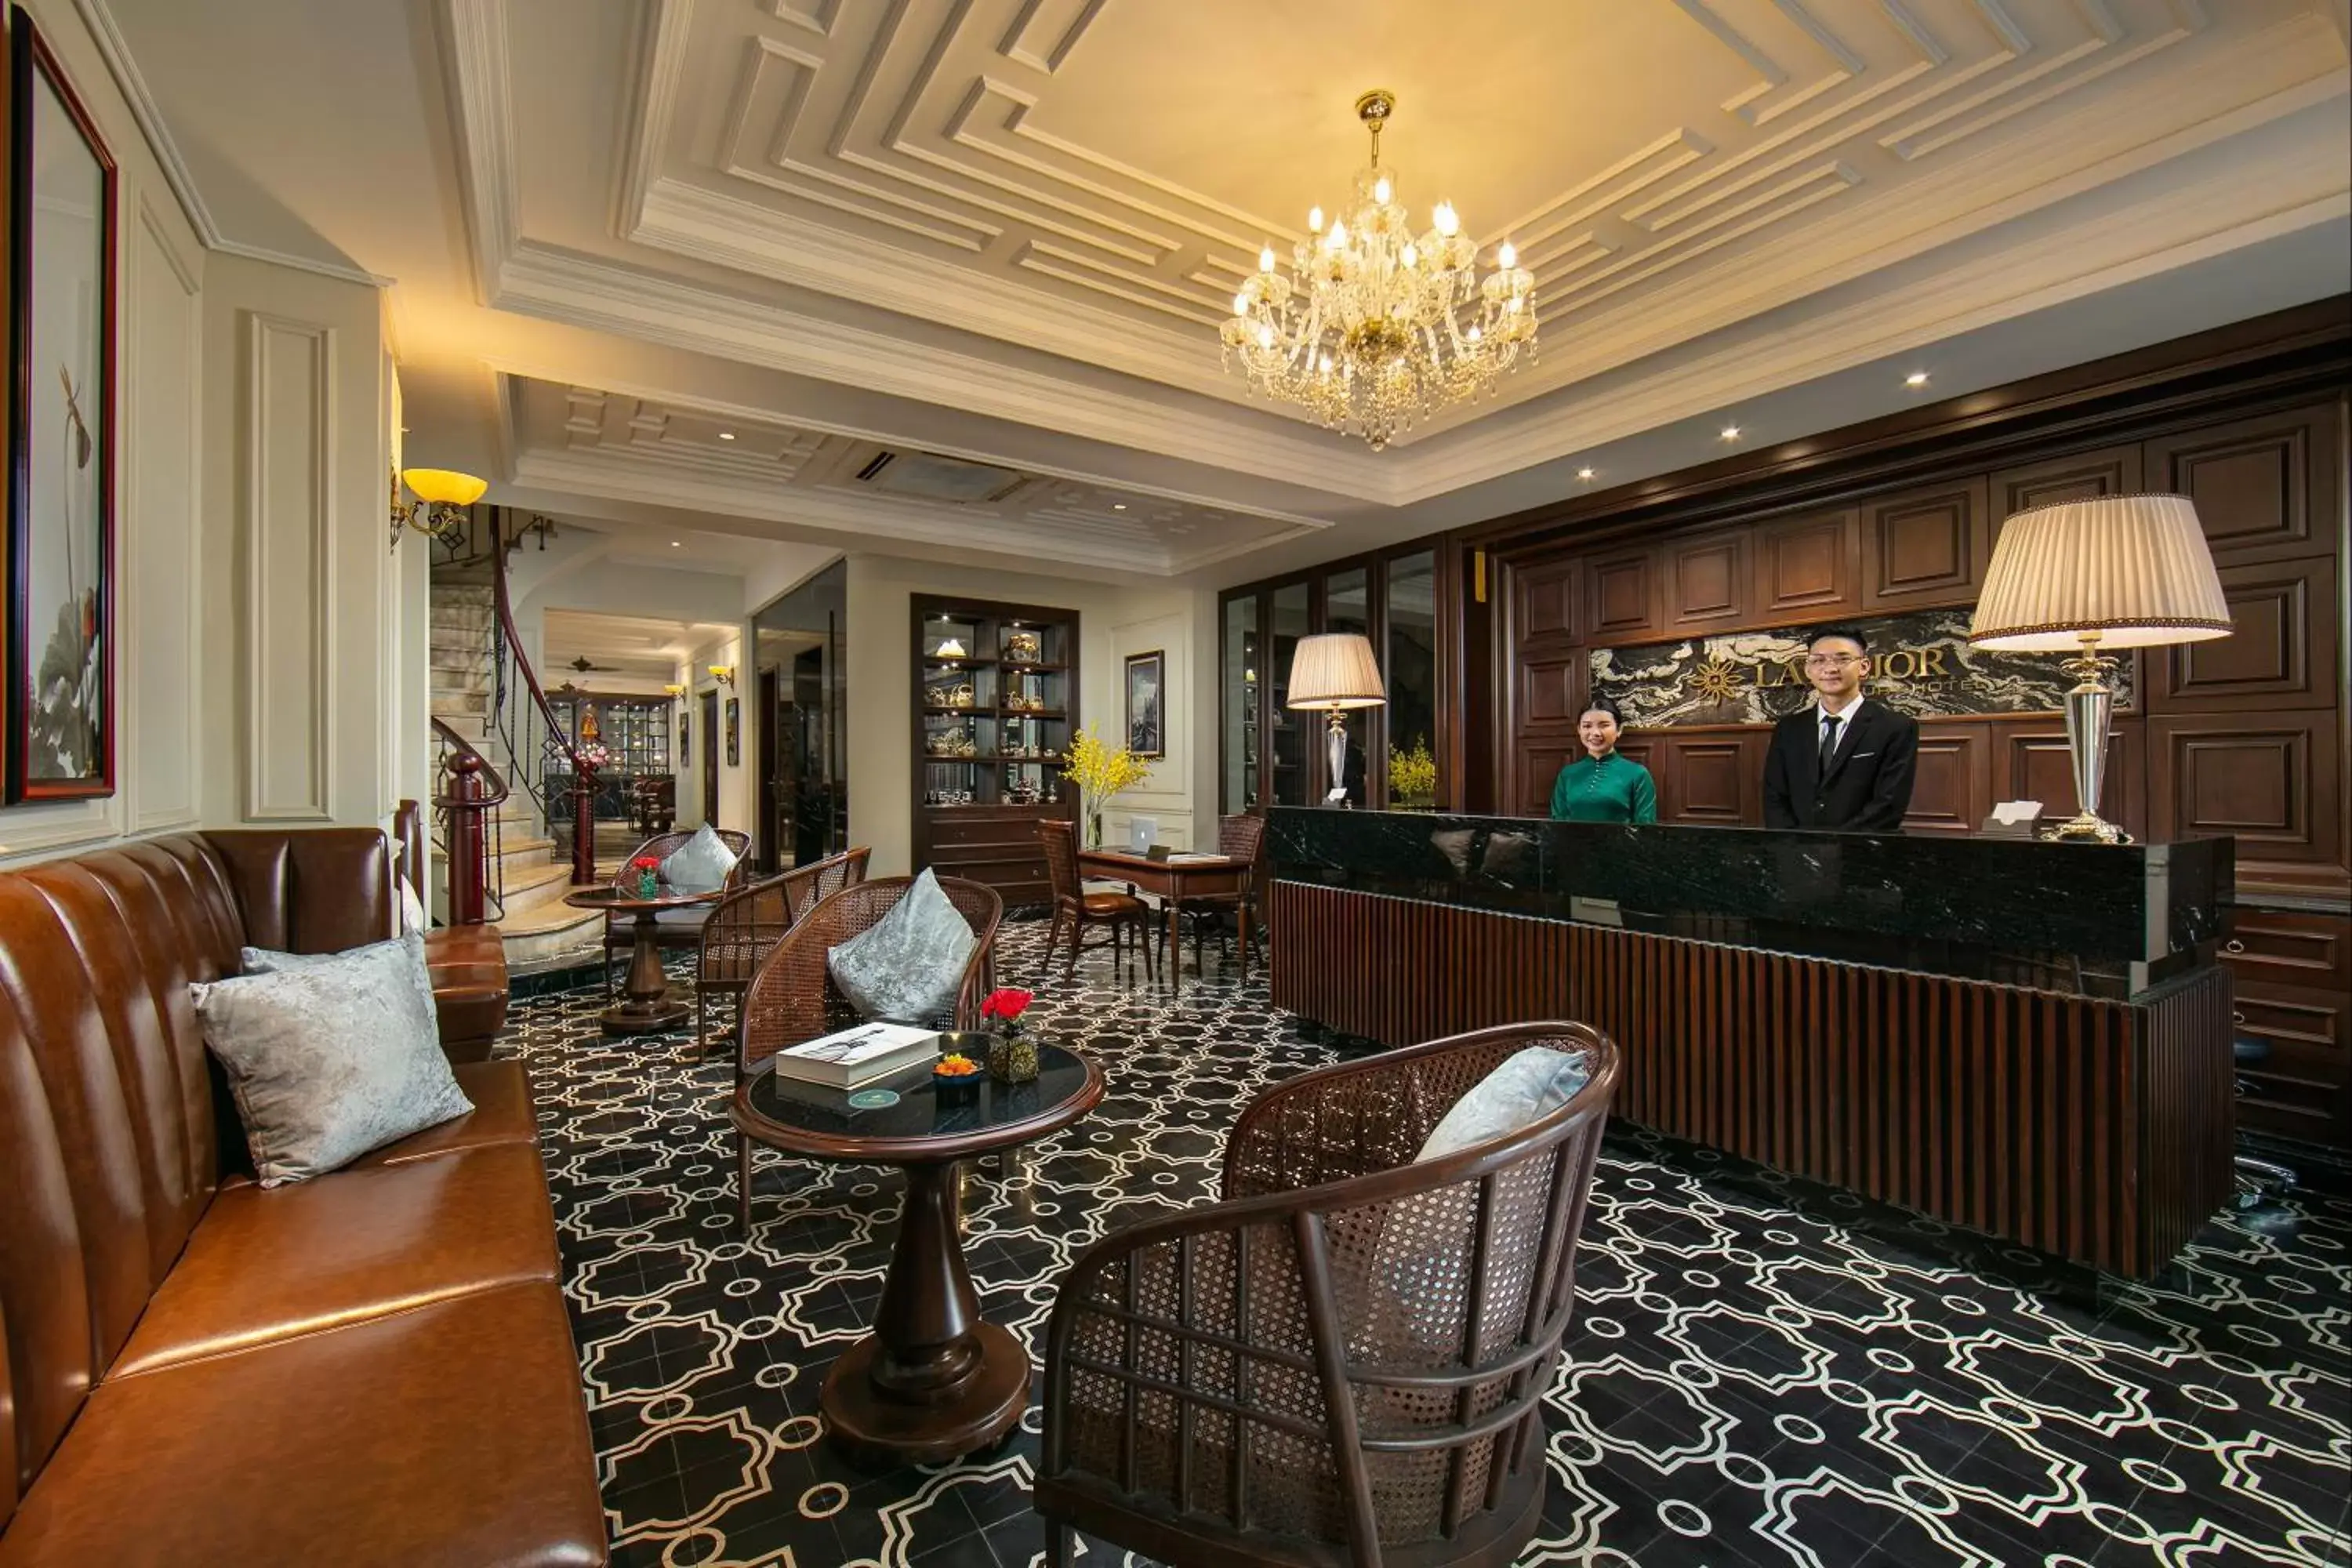 Lobby or reception, Lobby/Reception in La Mejor Hotel & Sky Bar